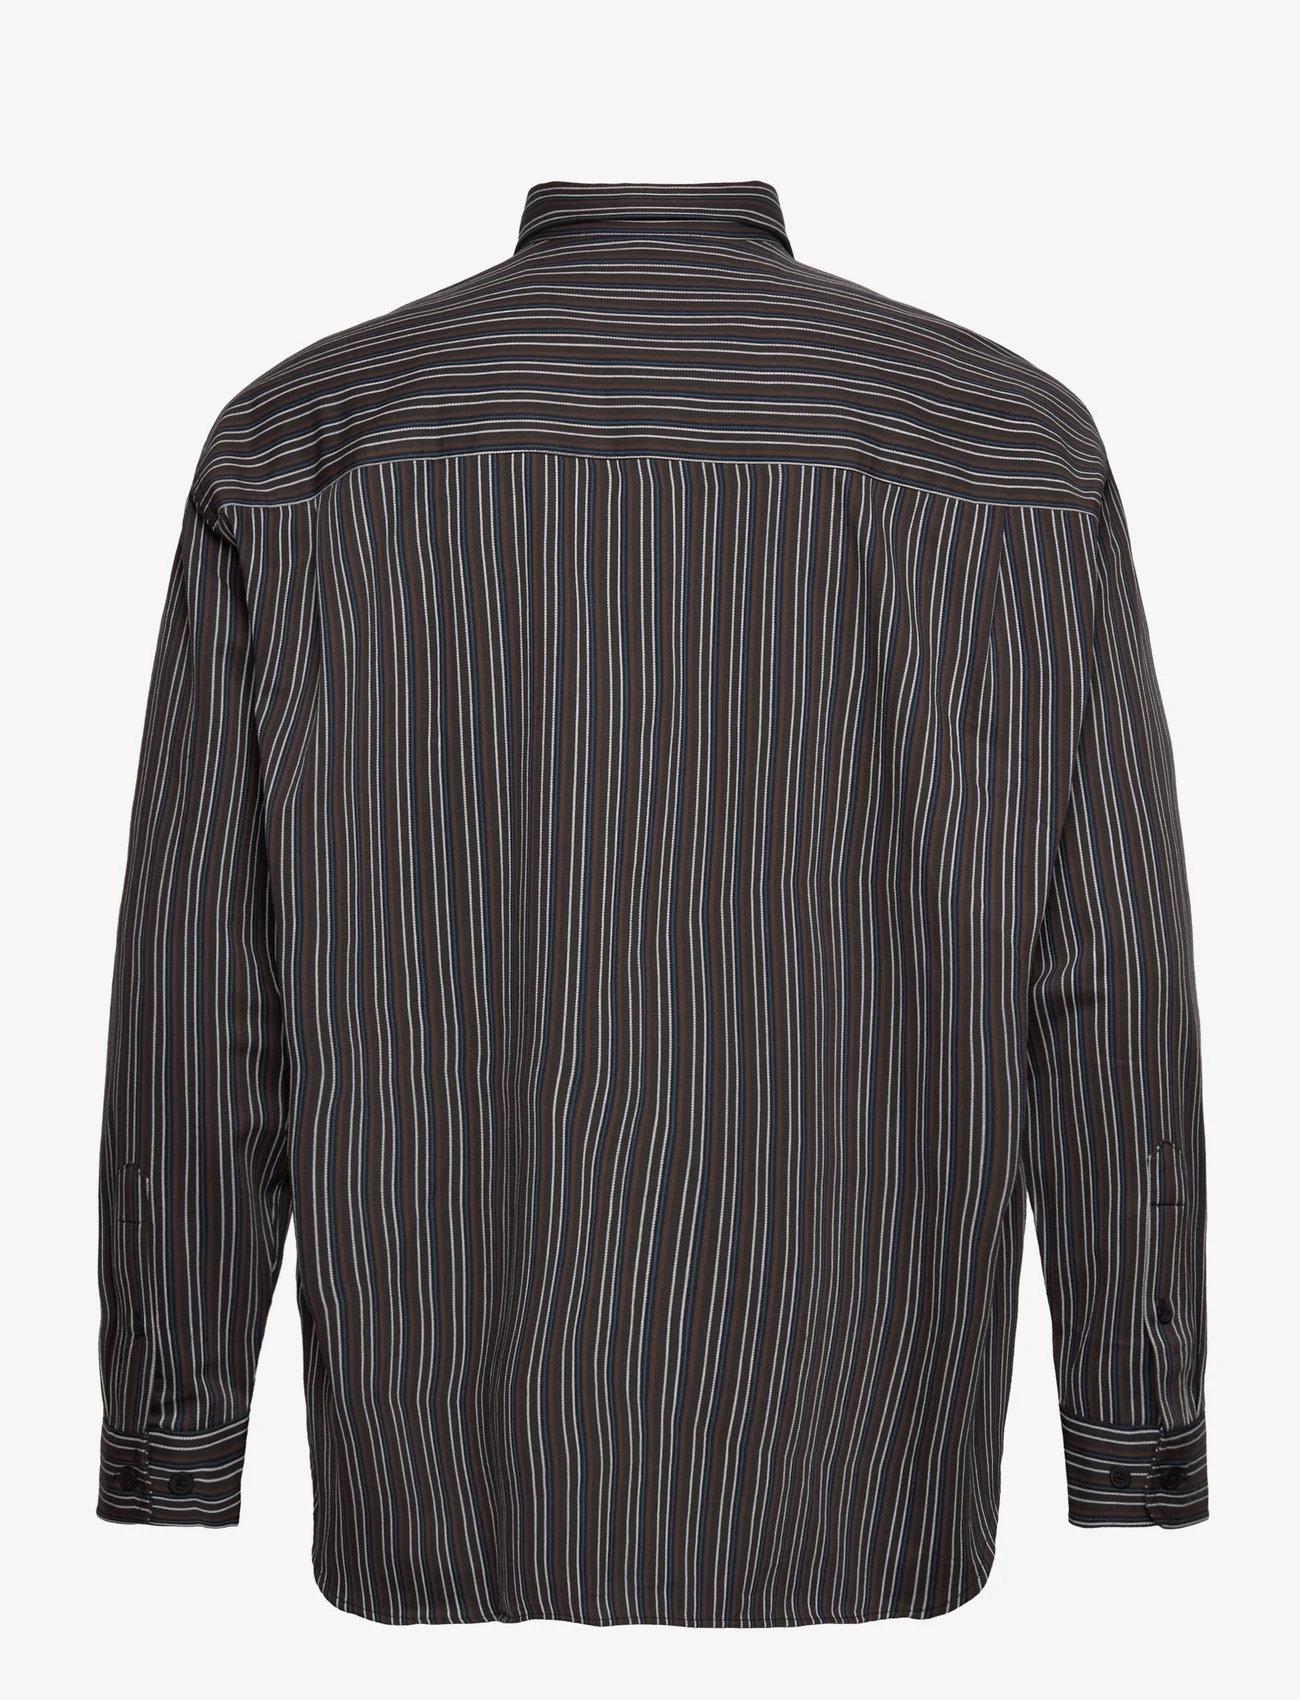 Samsøe Samsøe - Luan J shirt 14535 - kasdienio stiliaus marškiniai - mole st. - 1